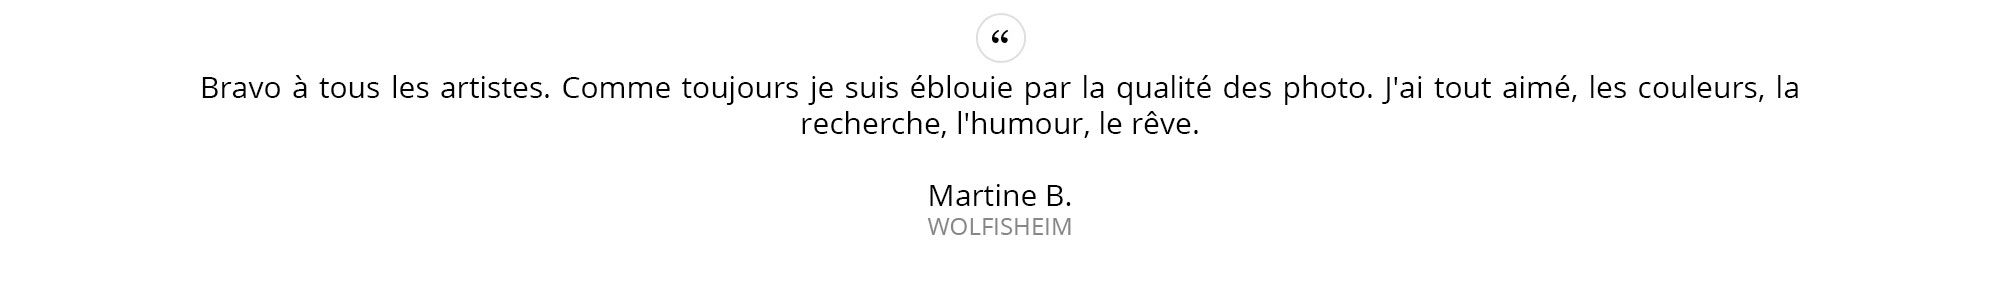 Martine-B.---WOLFISHEIM